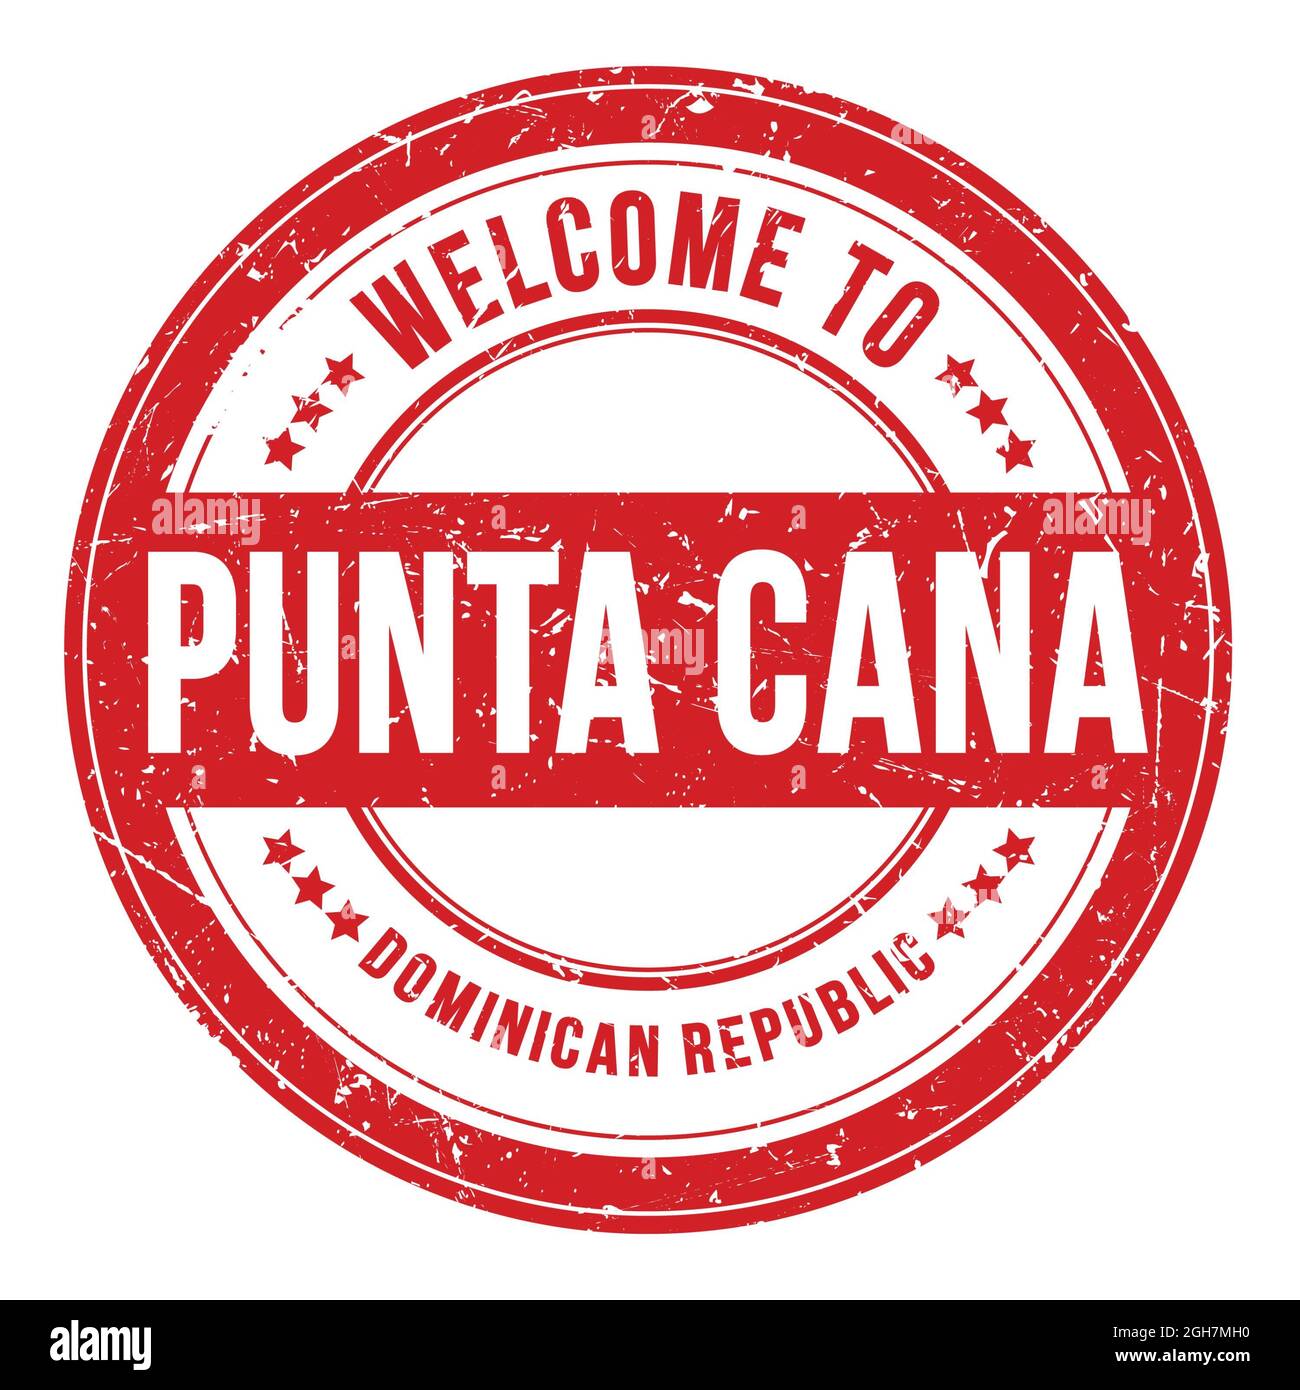 BIENVENUE À PUNTA CANA - RÉPUBLIQUE DOMINICAINE, mots écrits sur le timbre rouge rond à pièces Banque D'Images